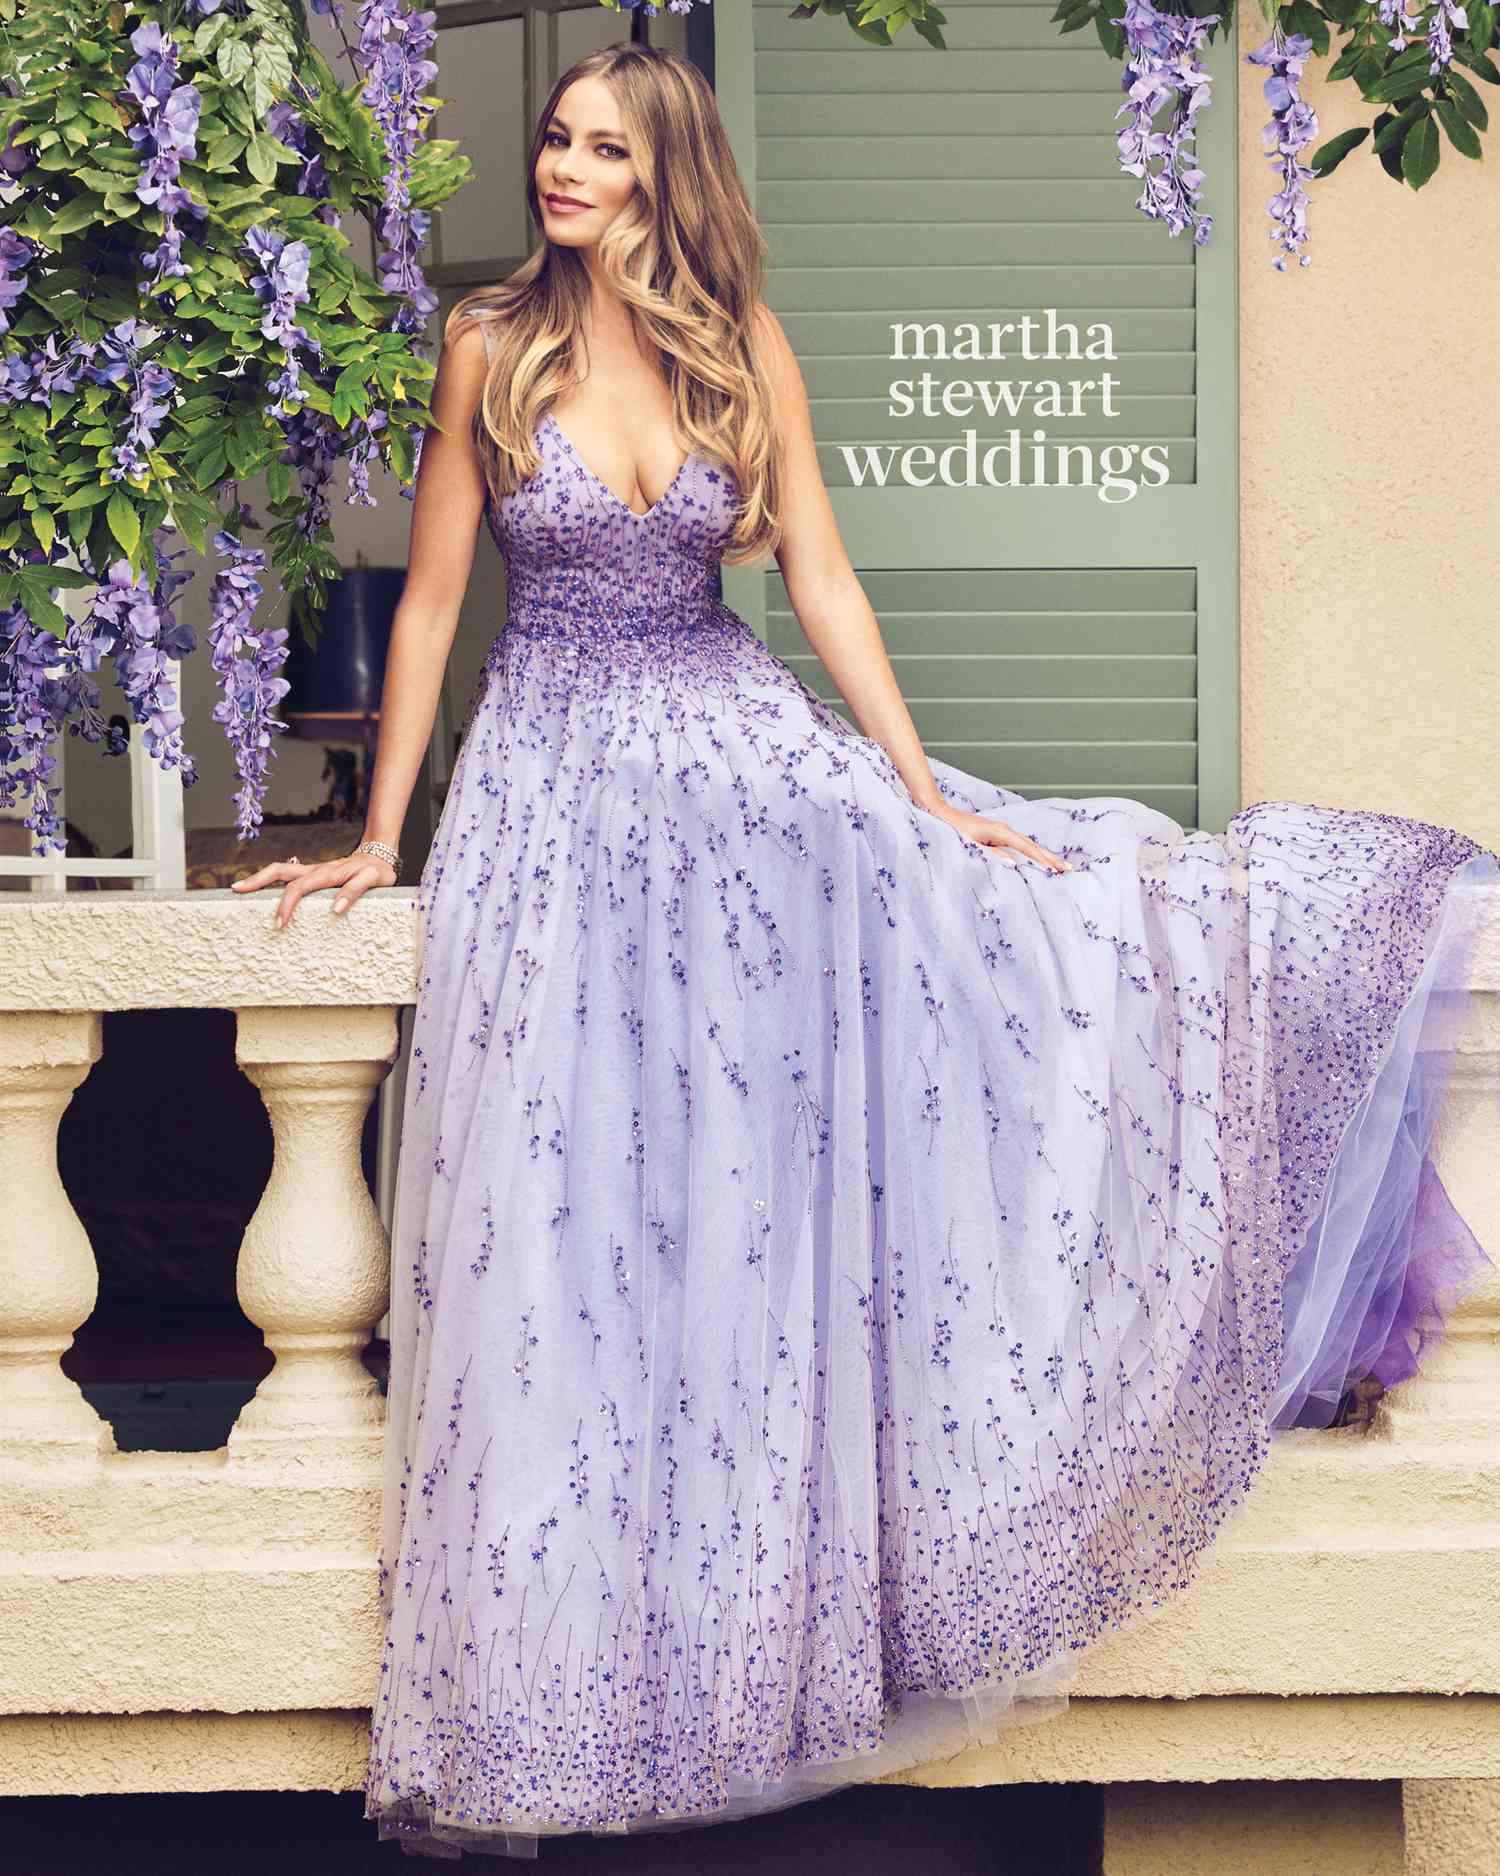 sofia-vergara-m03-lavender-bridal-gown-043v2-d112252-vert-0815.jpg